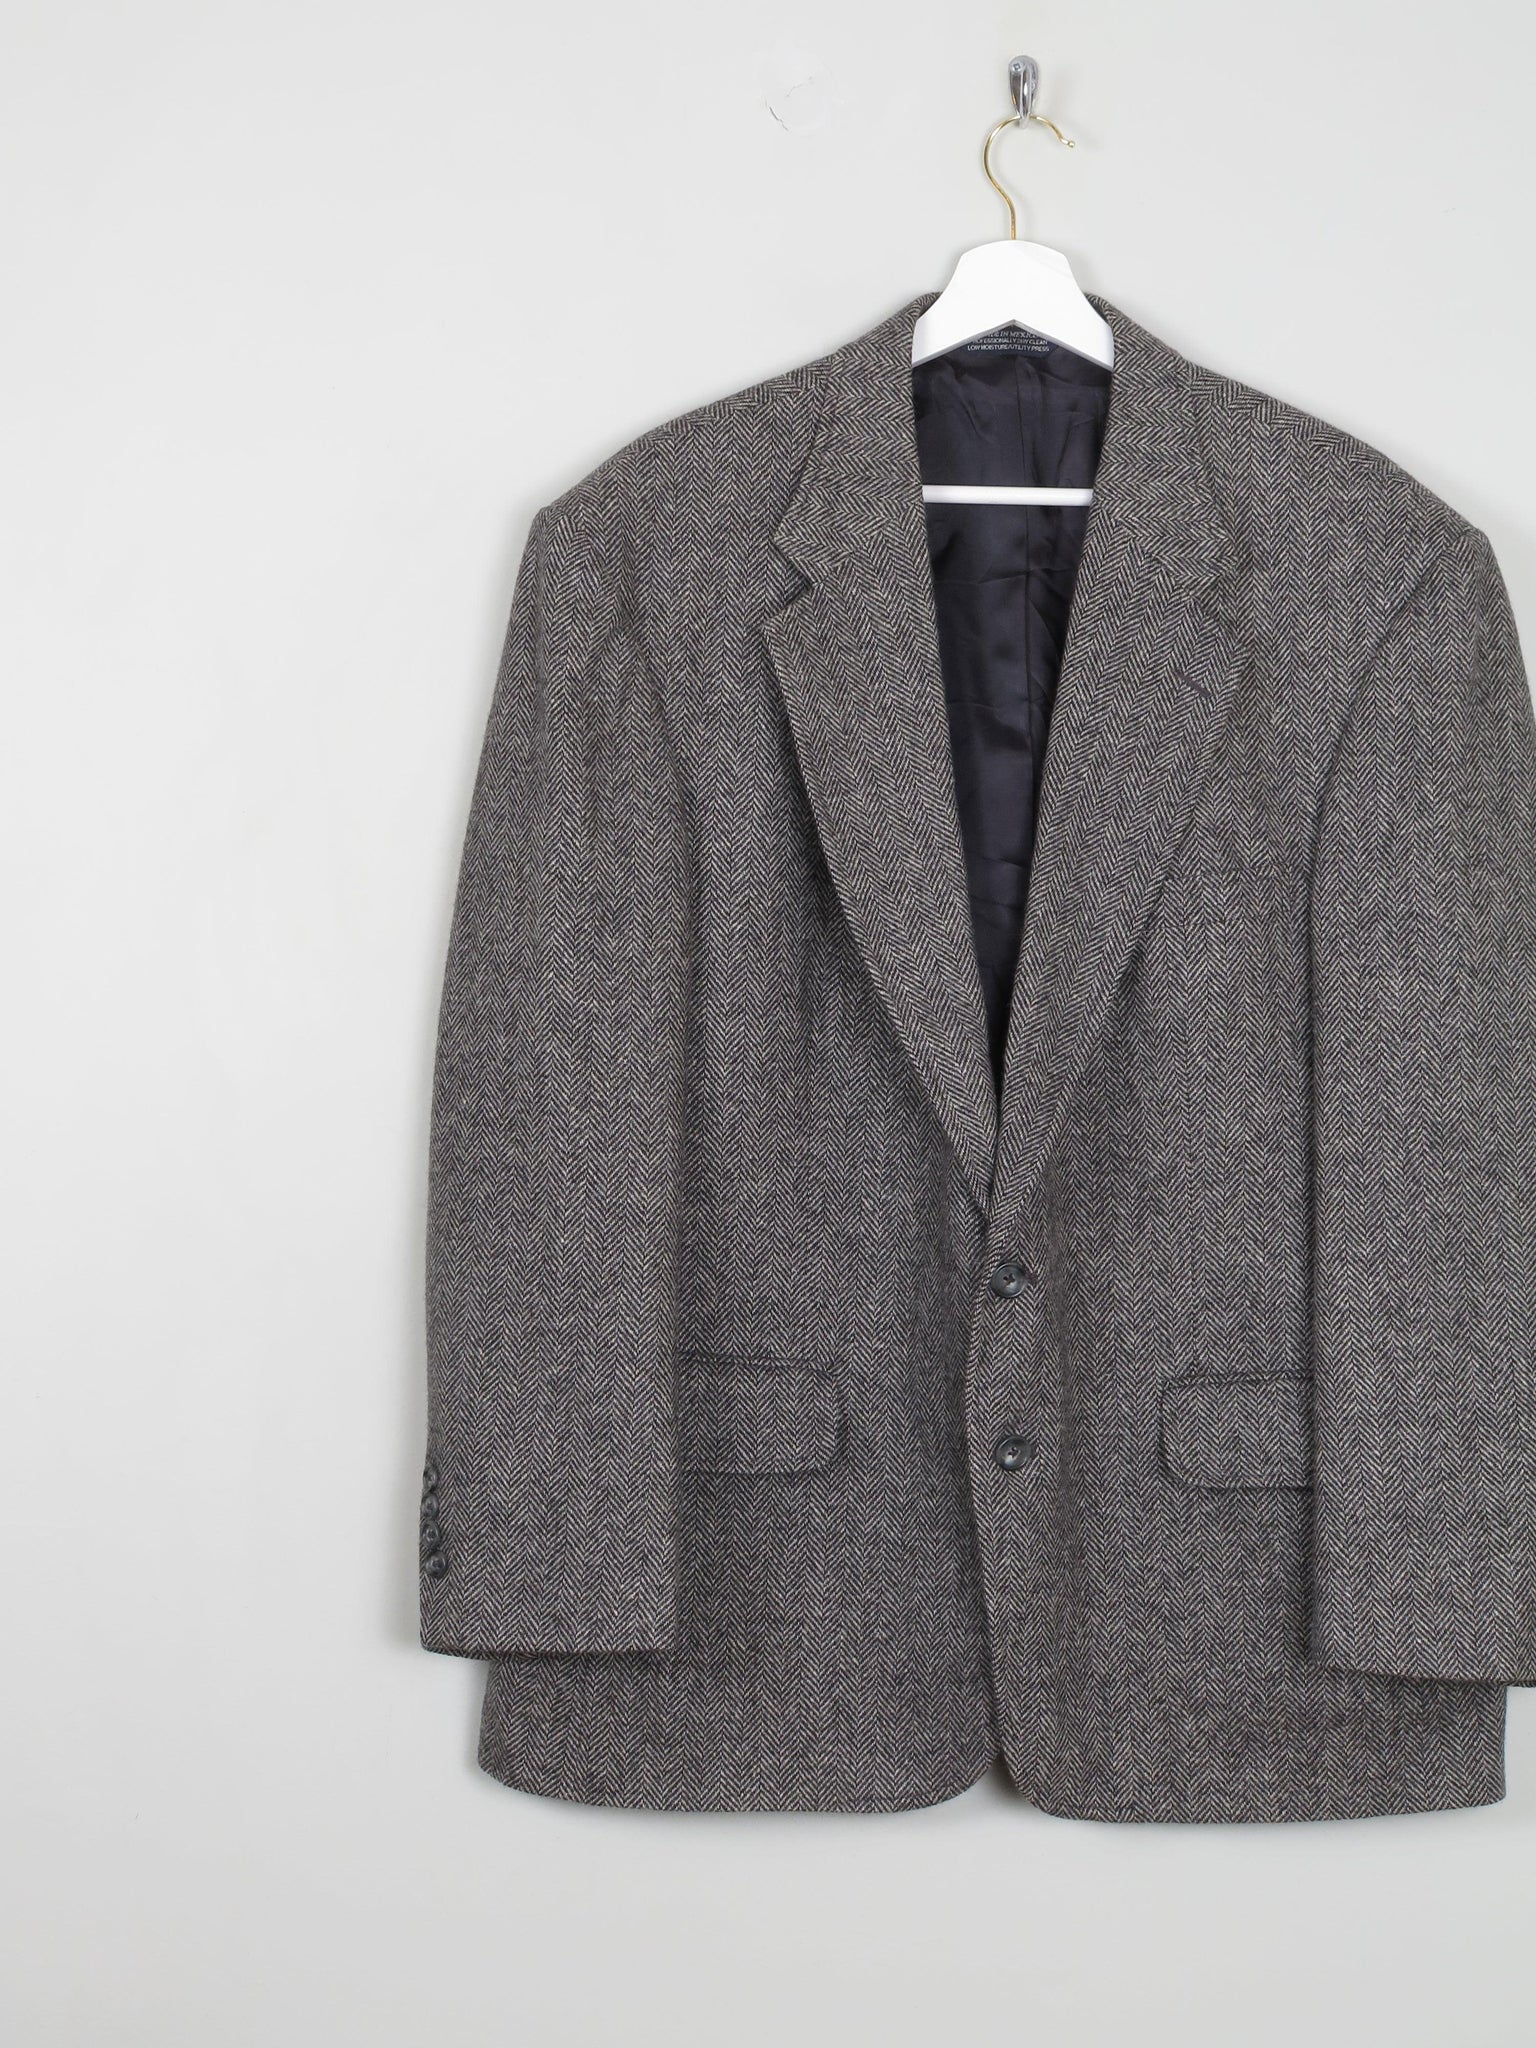 Men's Grey & Black Tweed Jacket L/44" S length - The Harlequin